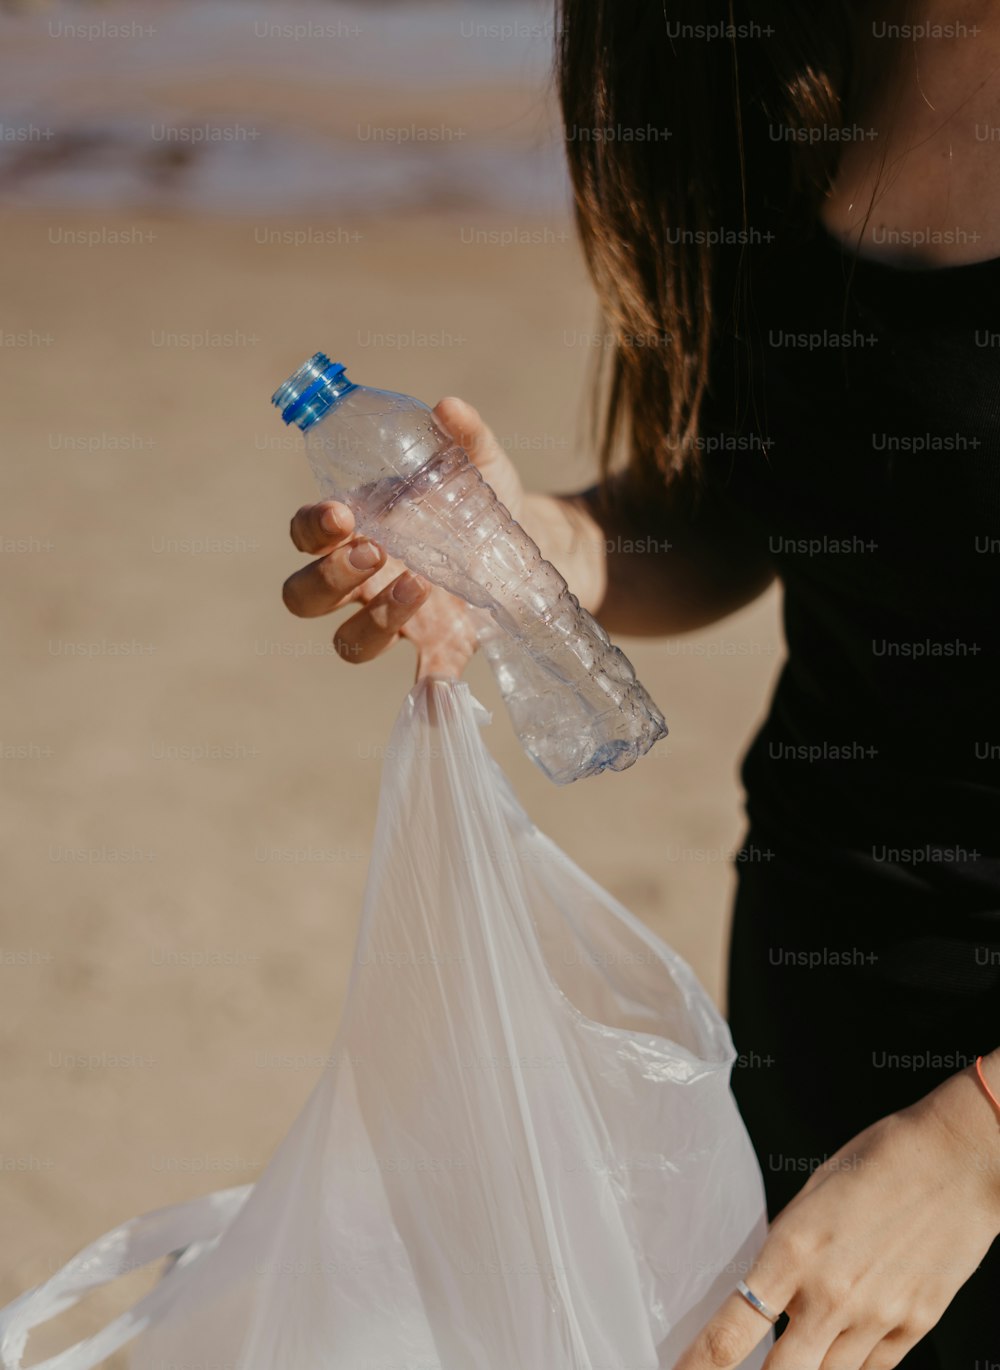 uma mulher segurando um saco plástico e uma garrafa de água